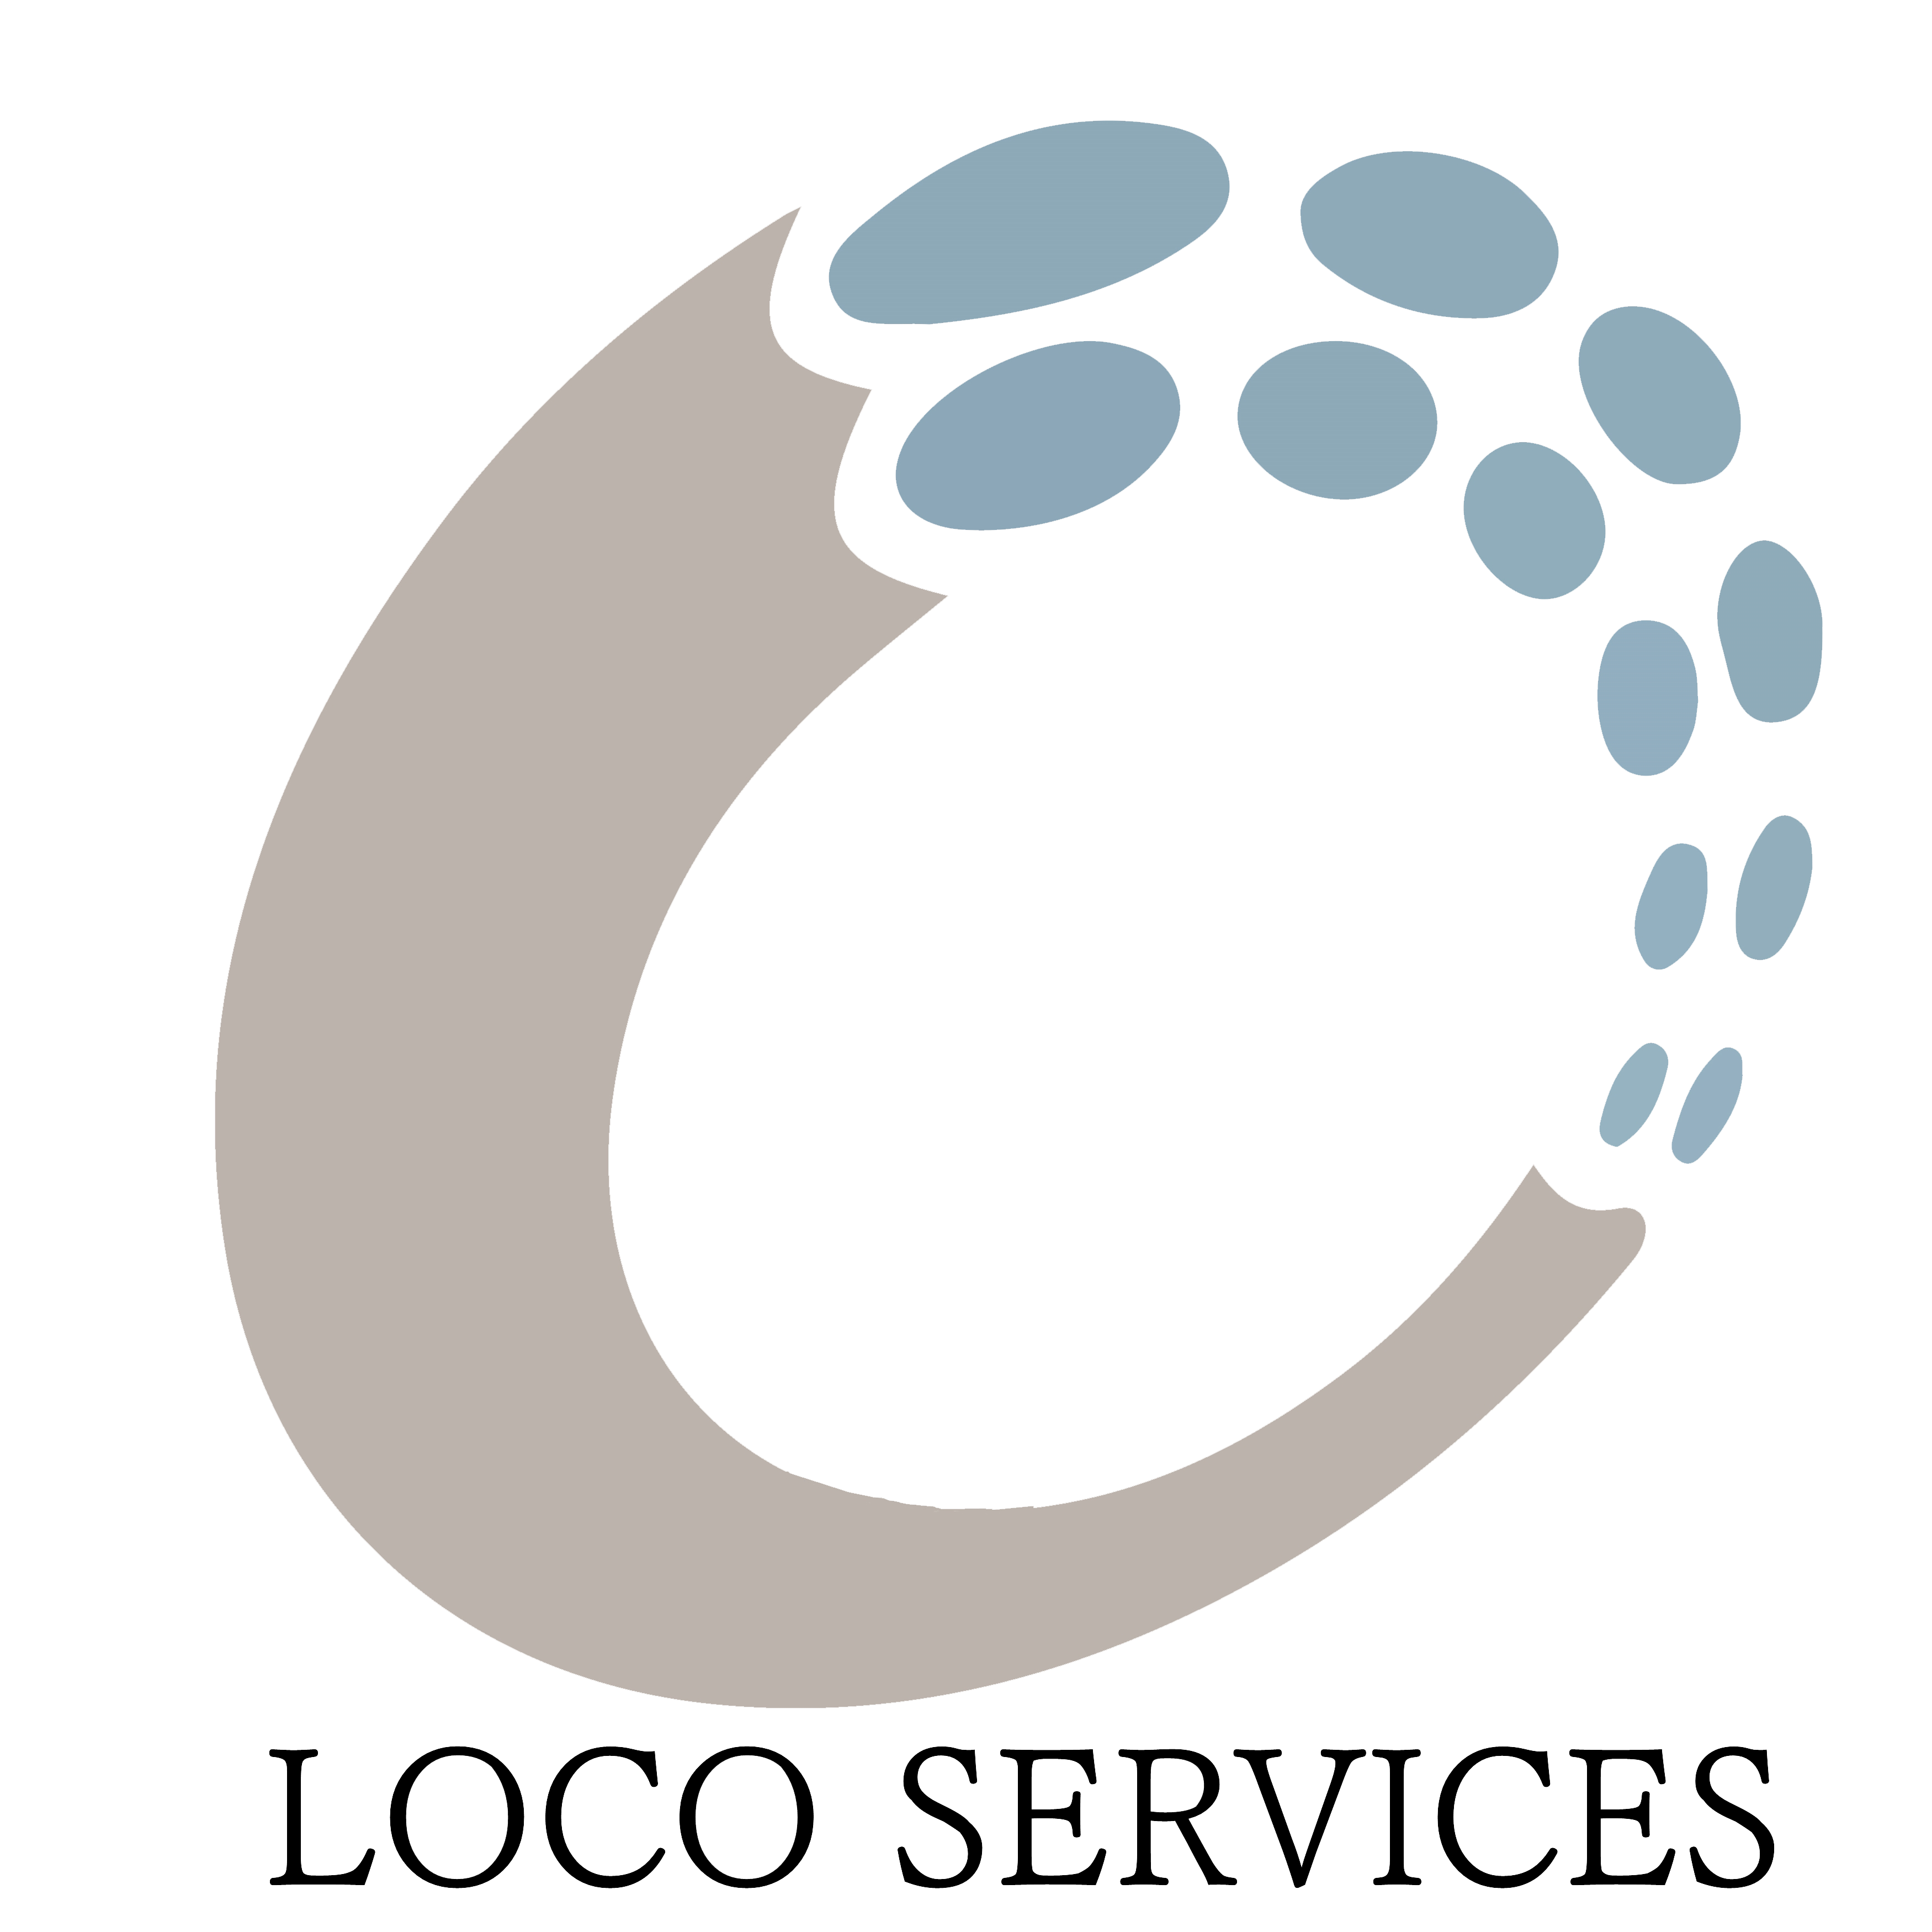 Loco Services Logo